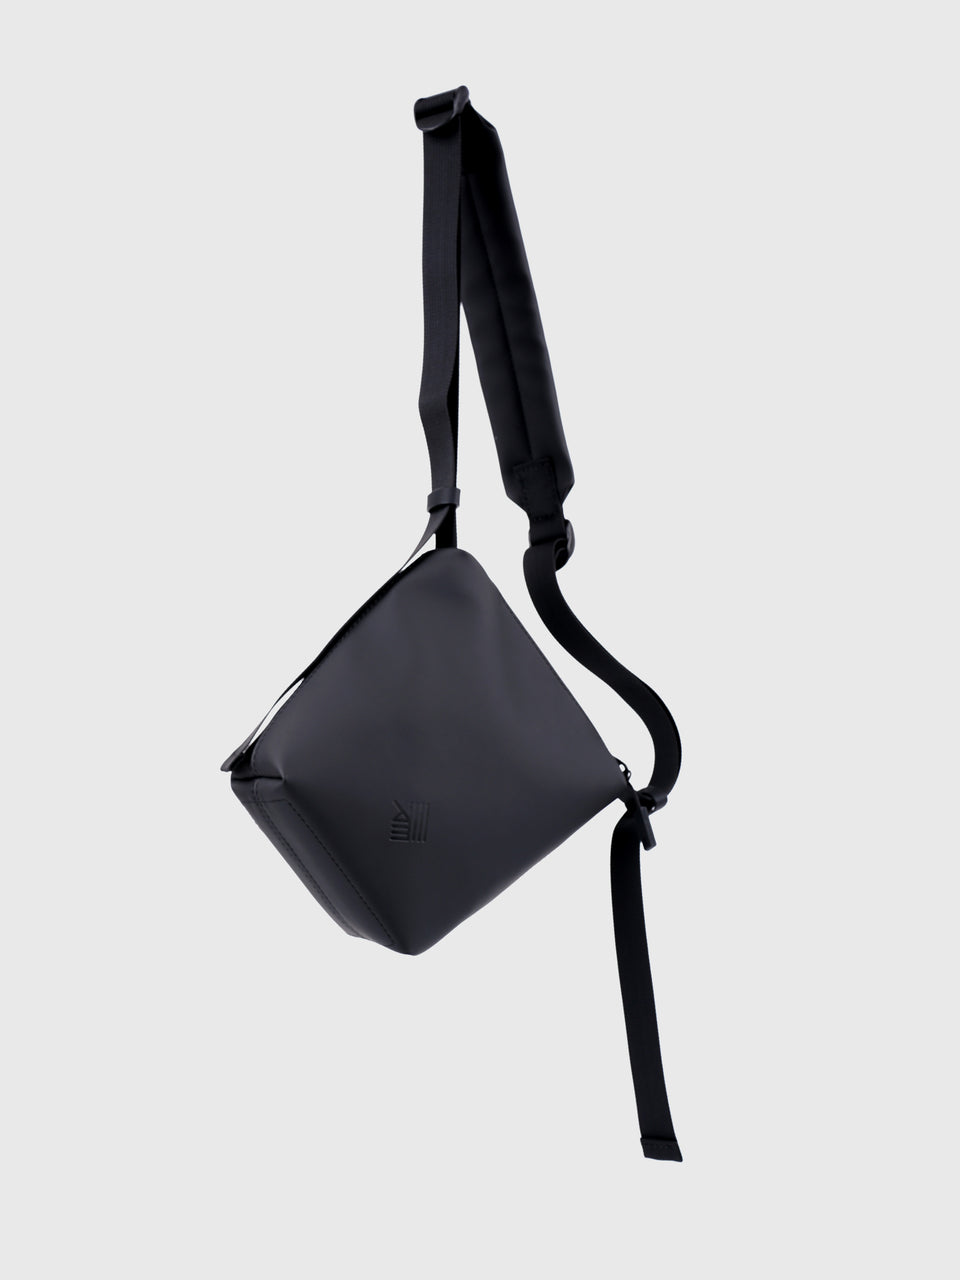 Single Phone Bag - Asphalt Black